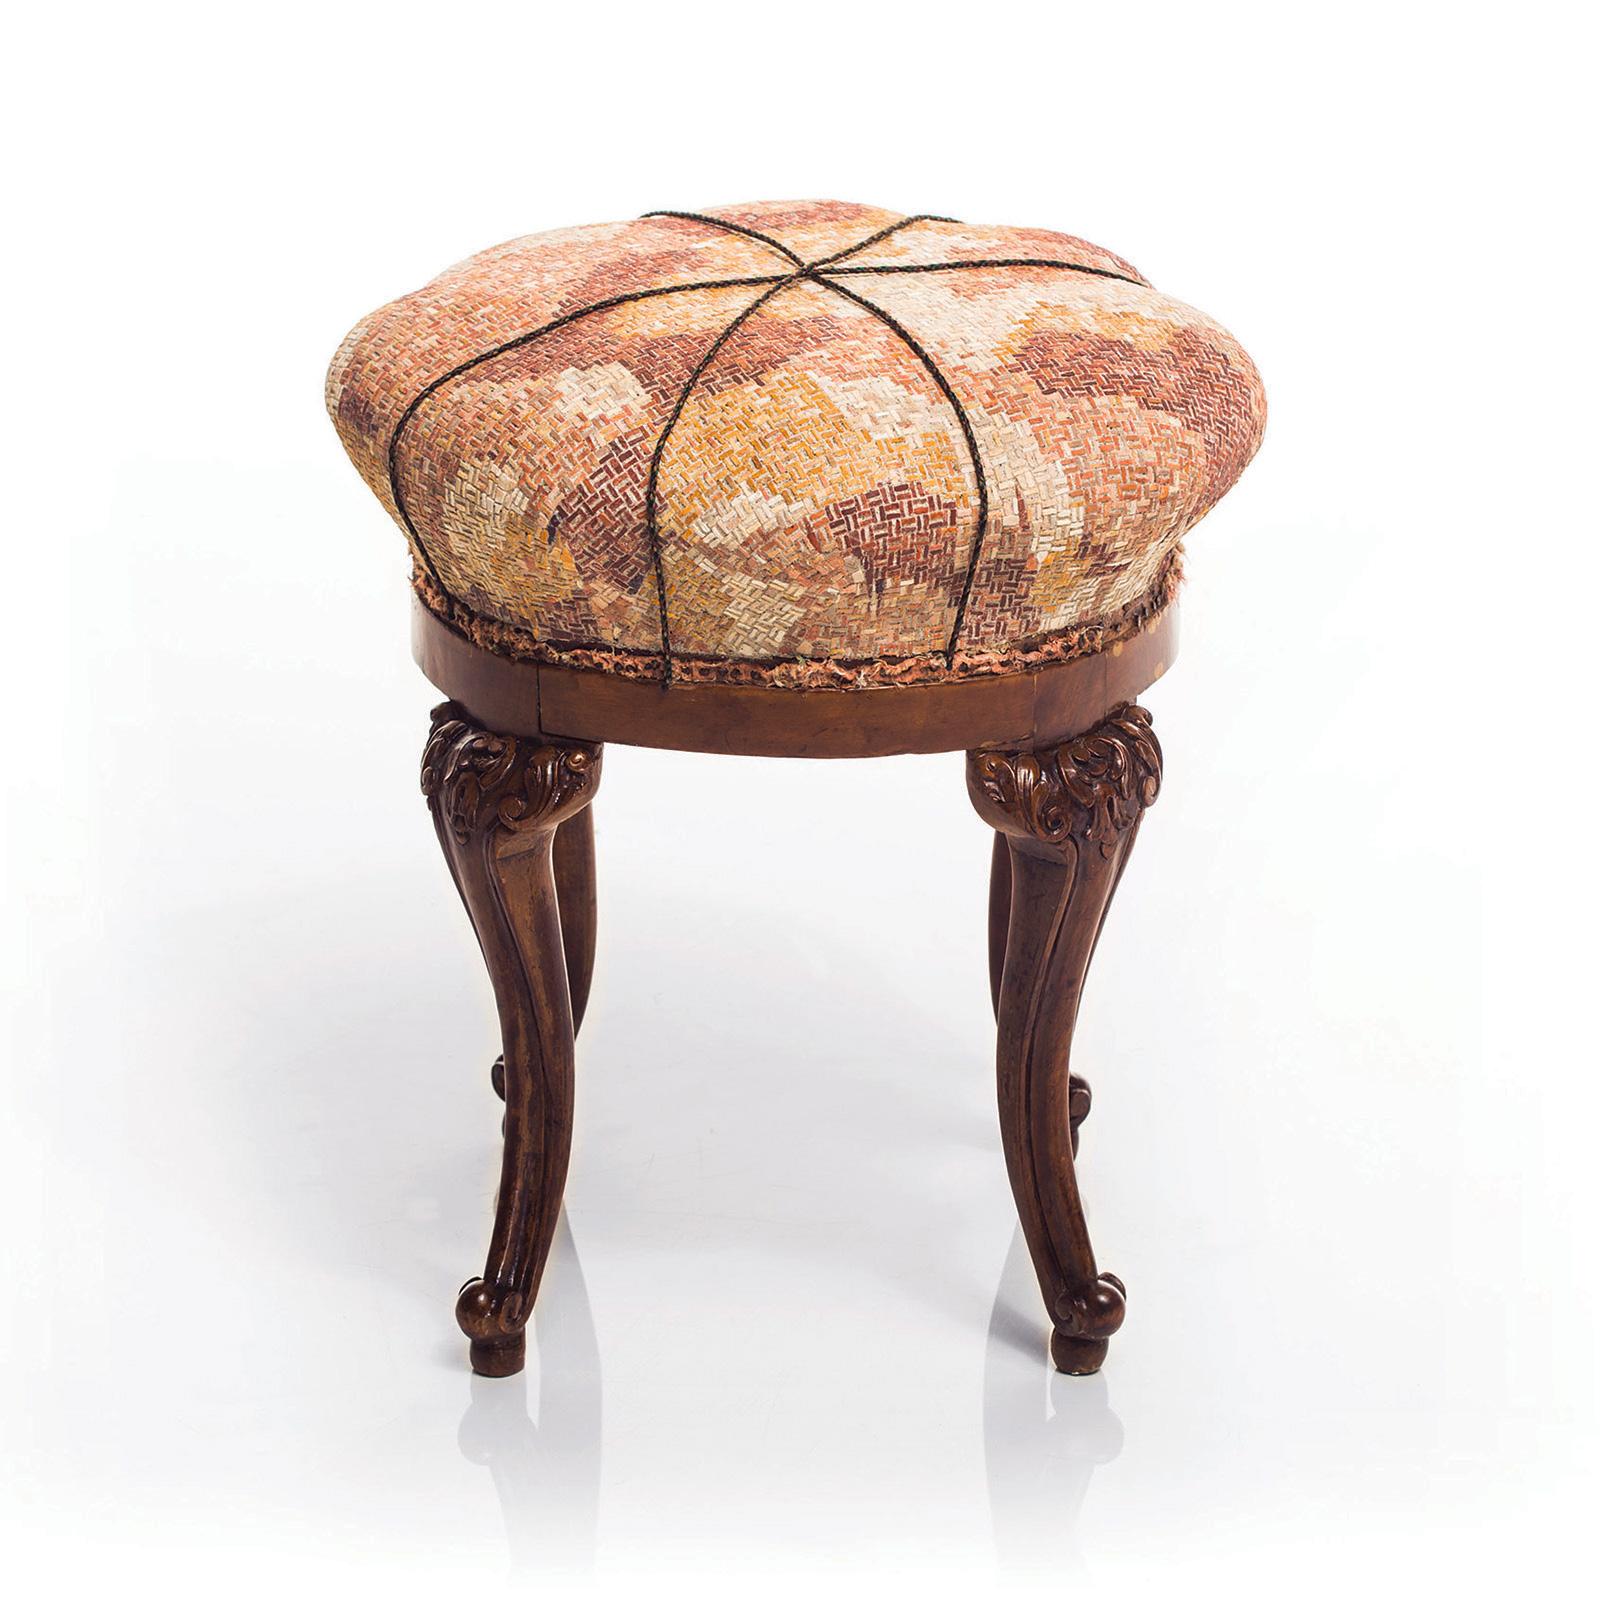 Sgabello Camouflage hat einen antiken Rahmen und eine Sitzfläche mit einzigartiger Mosaiktechnik. Das Konzept des Designers besteht in der Interpretation verschiedener Materialien, wobei er ausschließlich Marmor und Felsen verwendet und versucht,